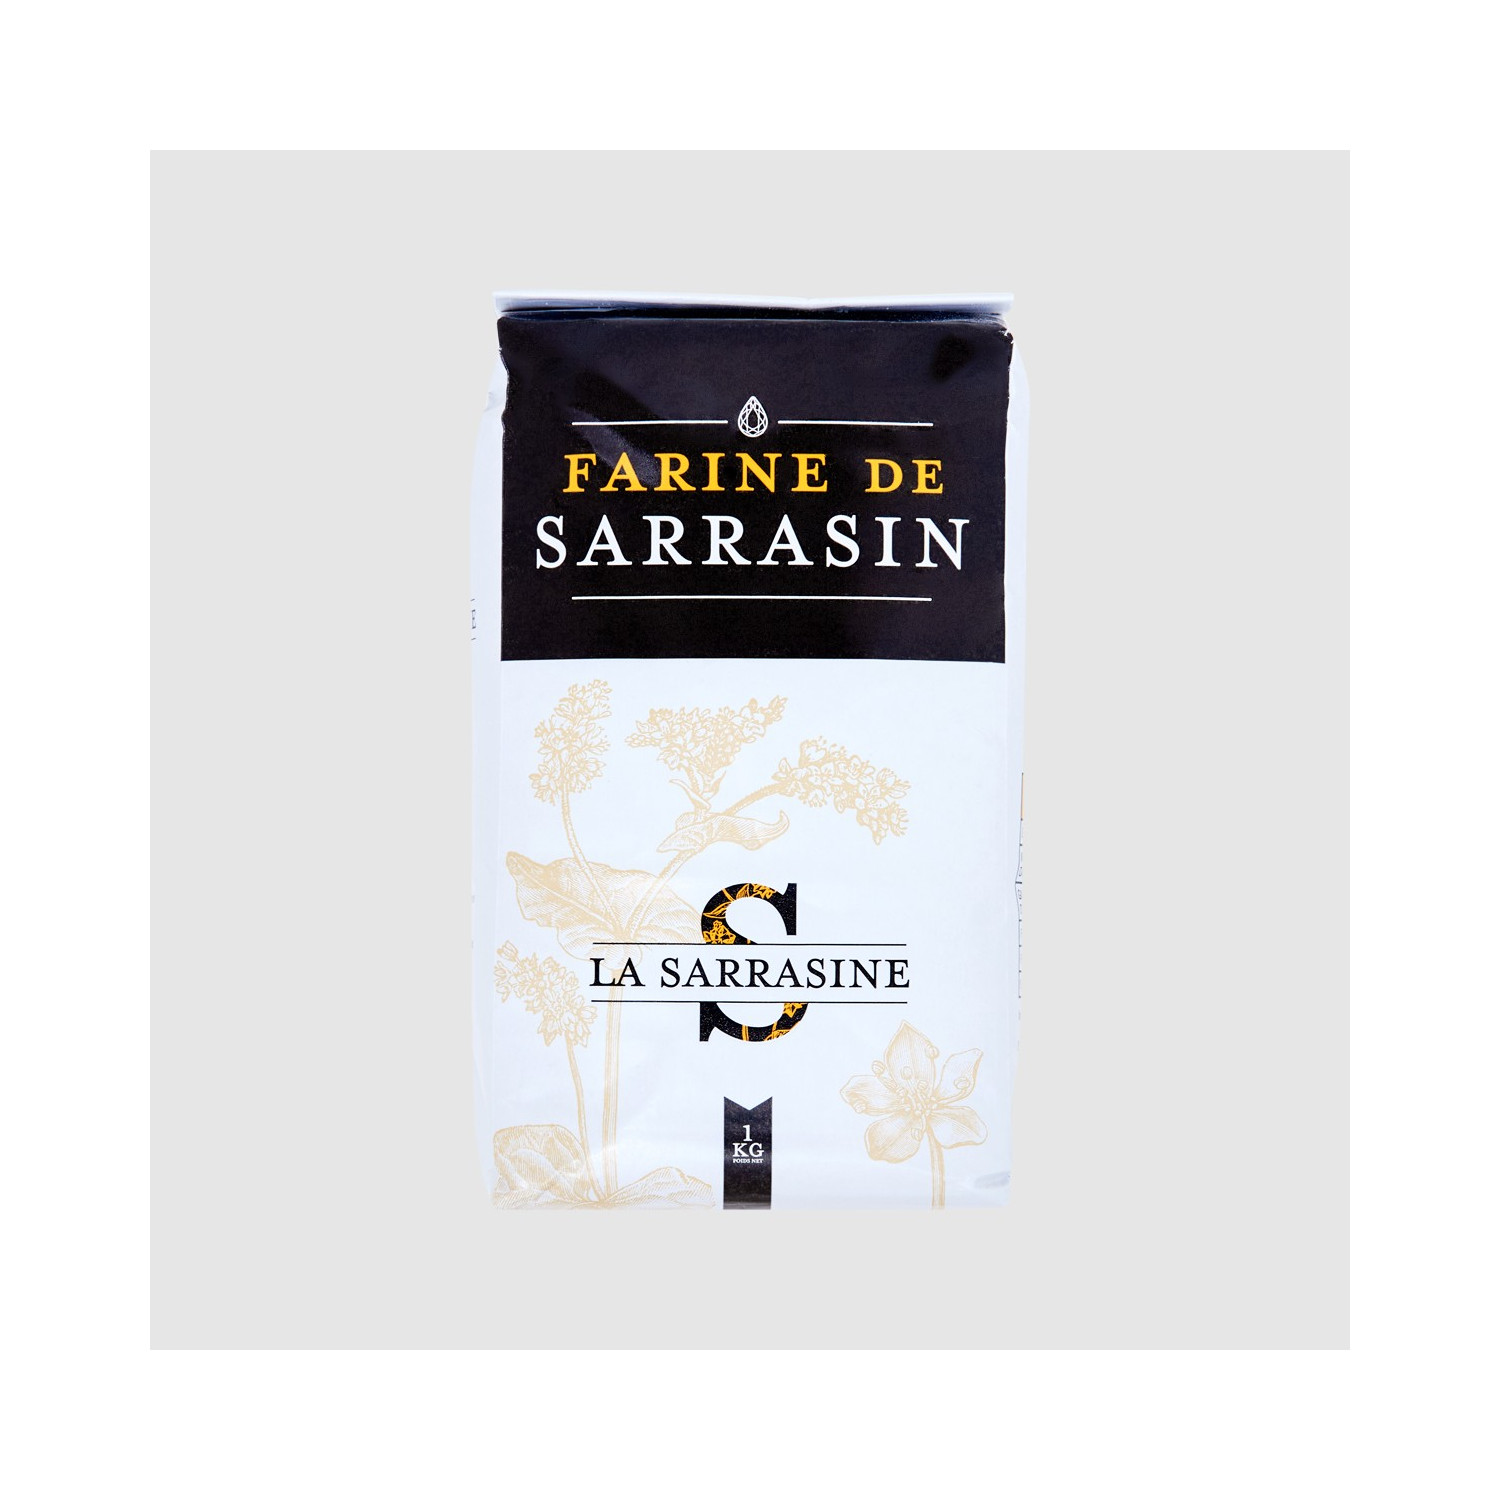 Farine sarrasin (farine de blé noir) La sarrasine 1 kg